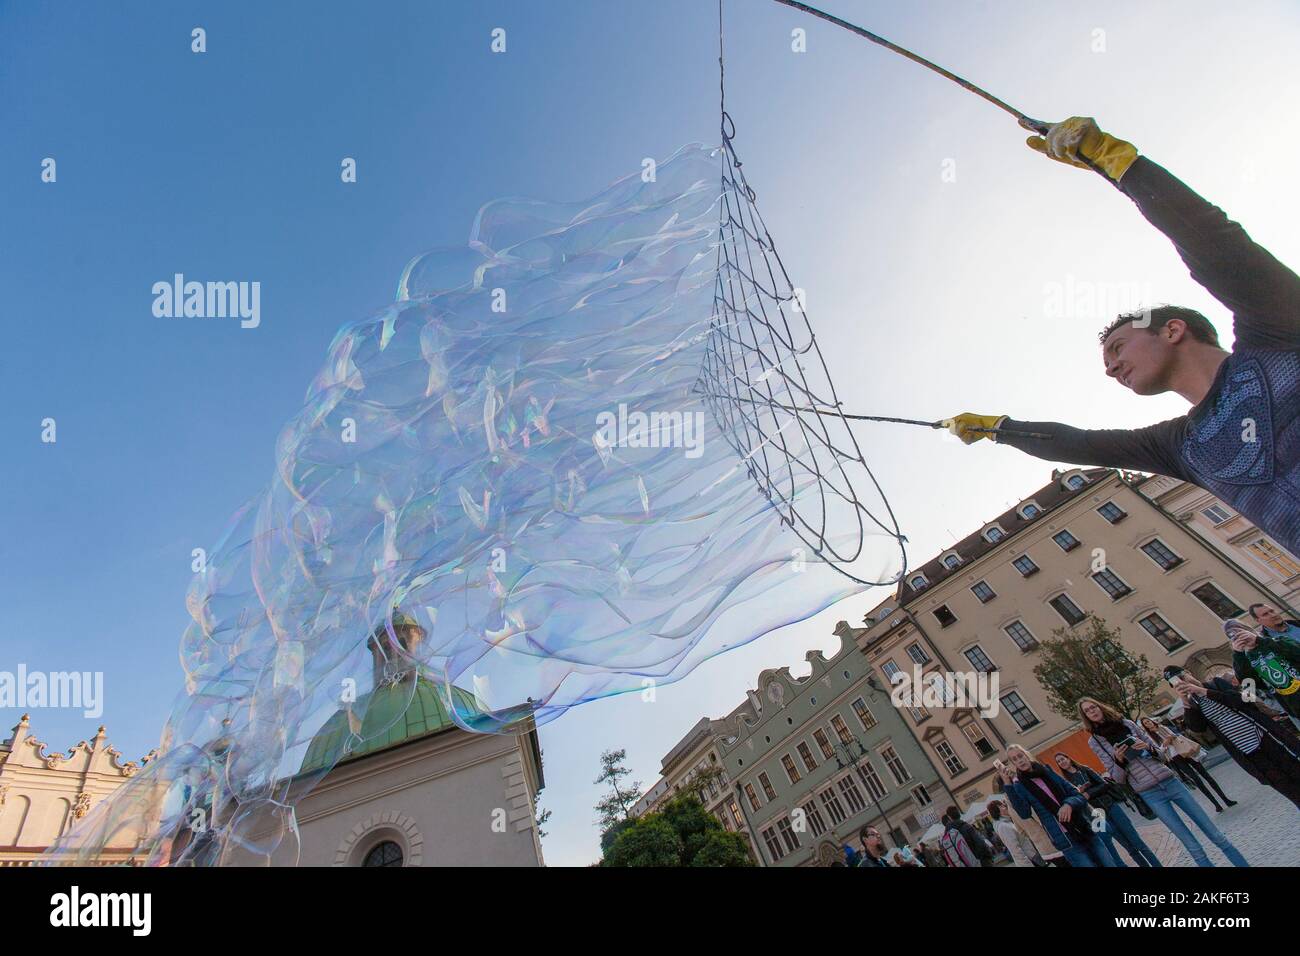 Die Menschen beobachten, wie ein Mann im Rynek Glowny (Hauptmarktplatz) im Zentrum von Krakow (Krakow), Polen, riesige Blasen erzeugt Stockfoto